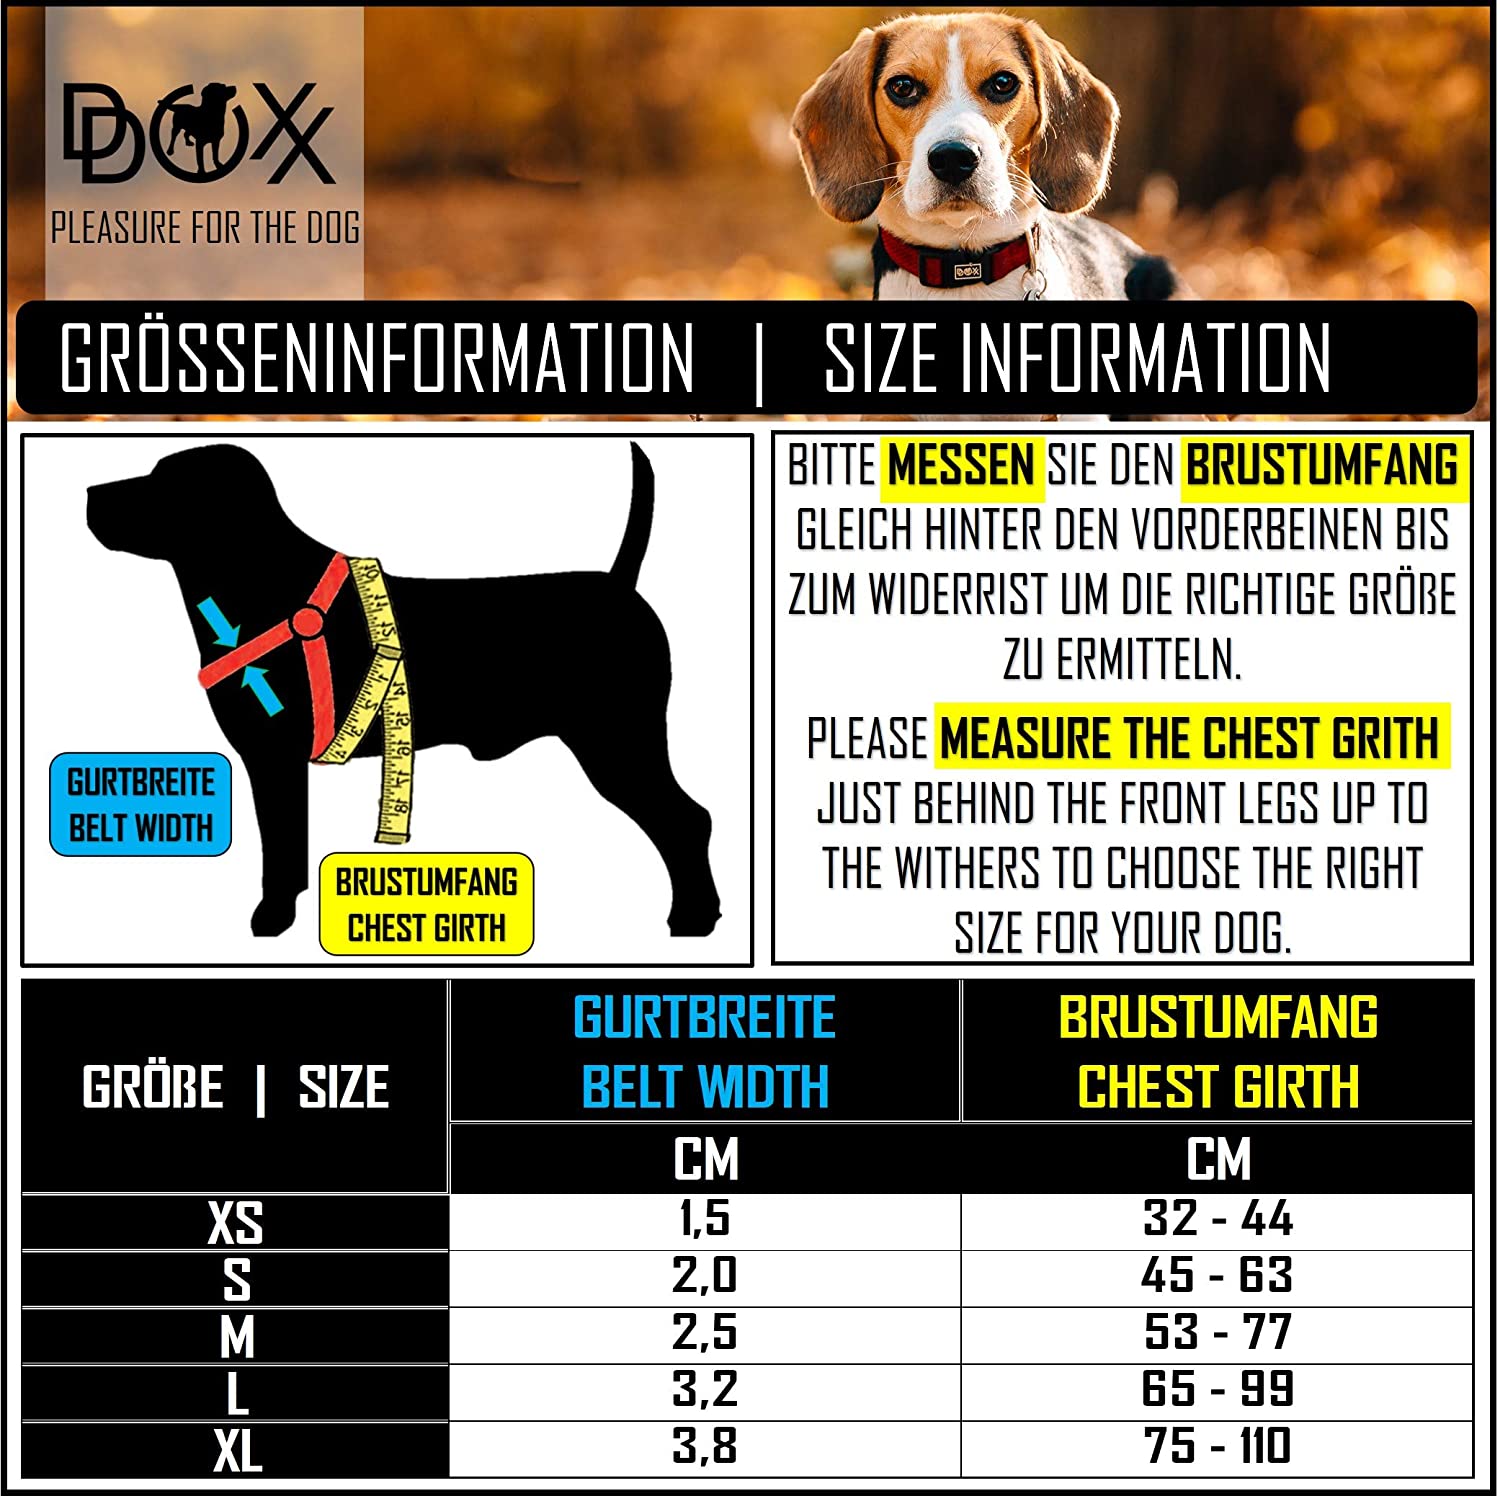  DDOXX Arnés Perro Step-In Air Mesh, Ajustable, Acolchado | Diferentes Colores & Tamaños | para Perros Pequeño, Mediano y Grande | Accesorios Gato Cachorro | Rosado Pink, XS 